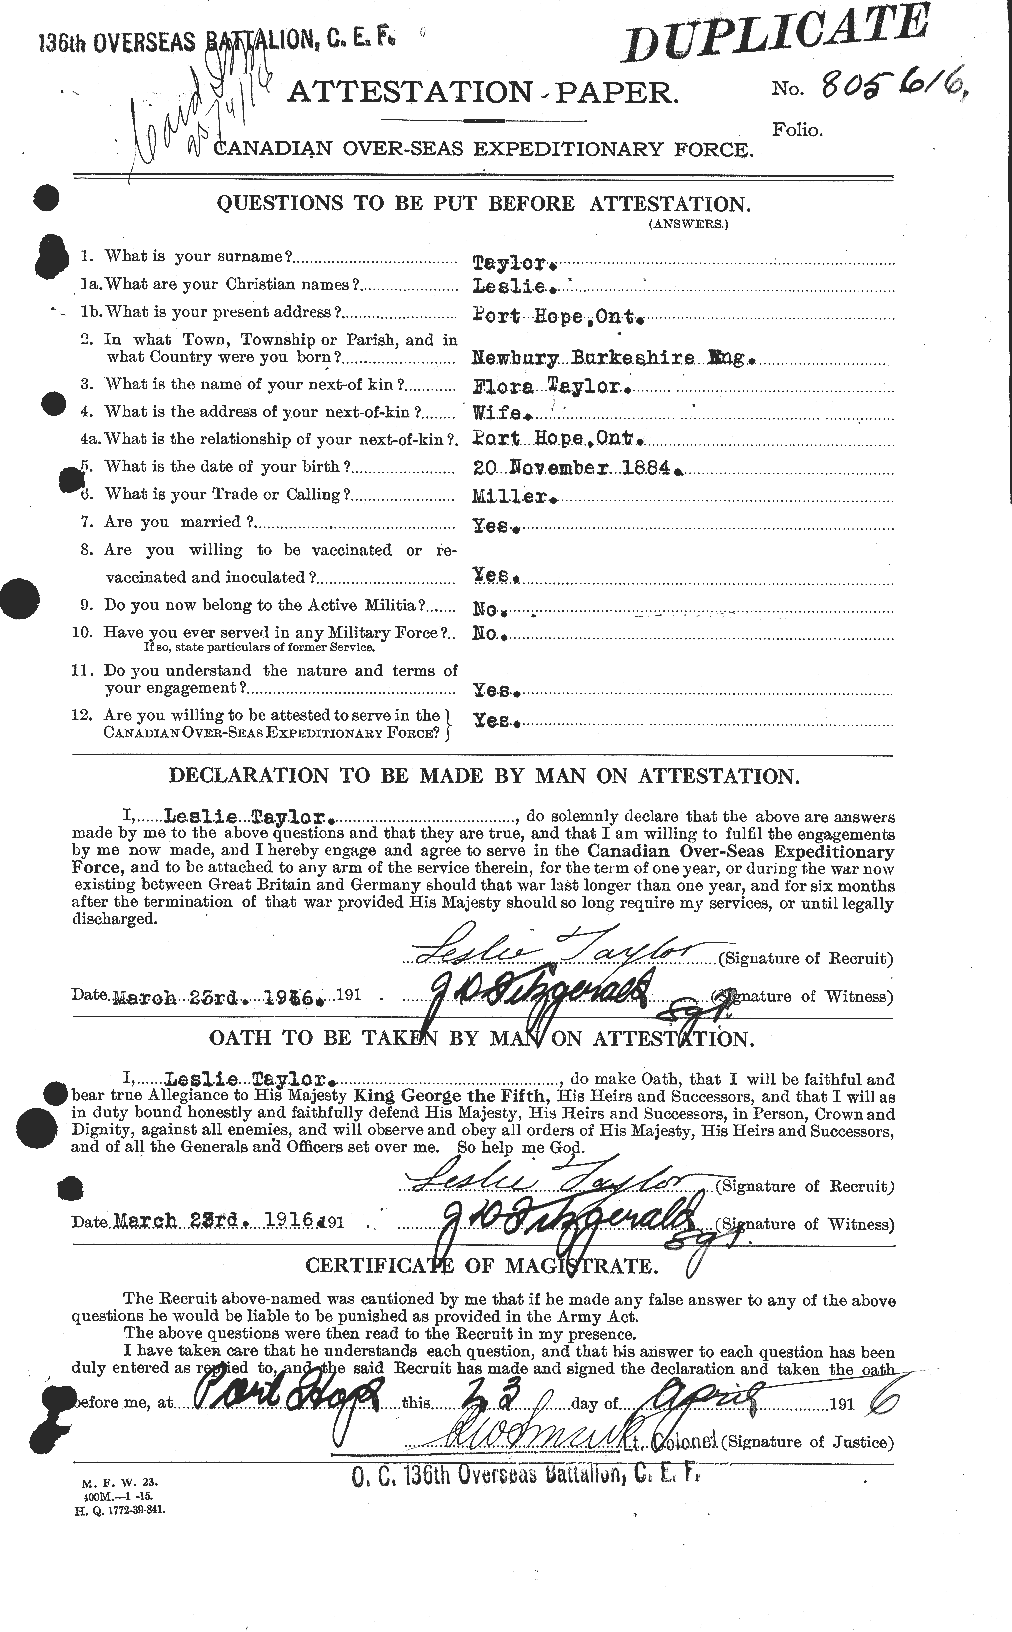 Dossiers du Personnel de la Première Guerre mondiale - CEC 627637a